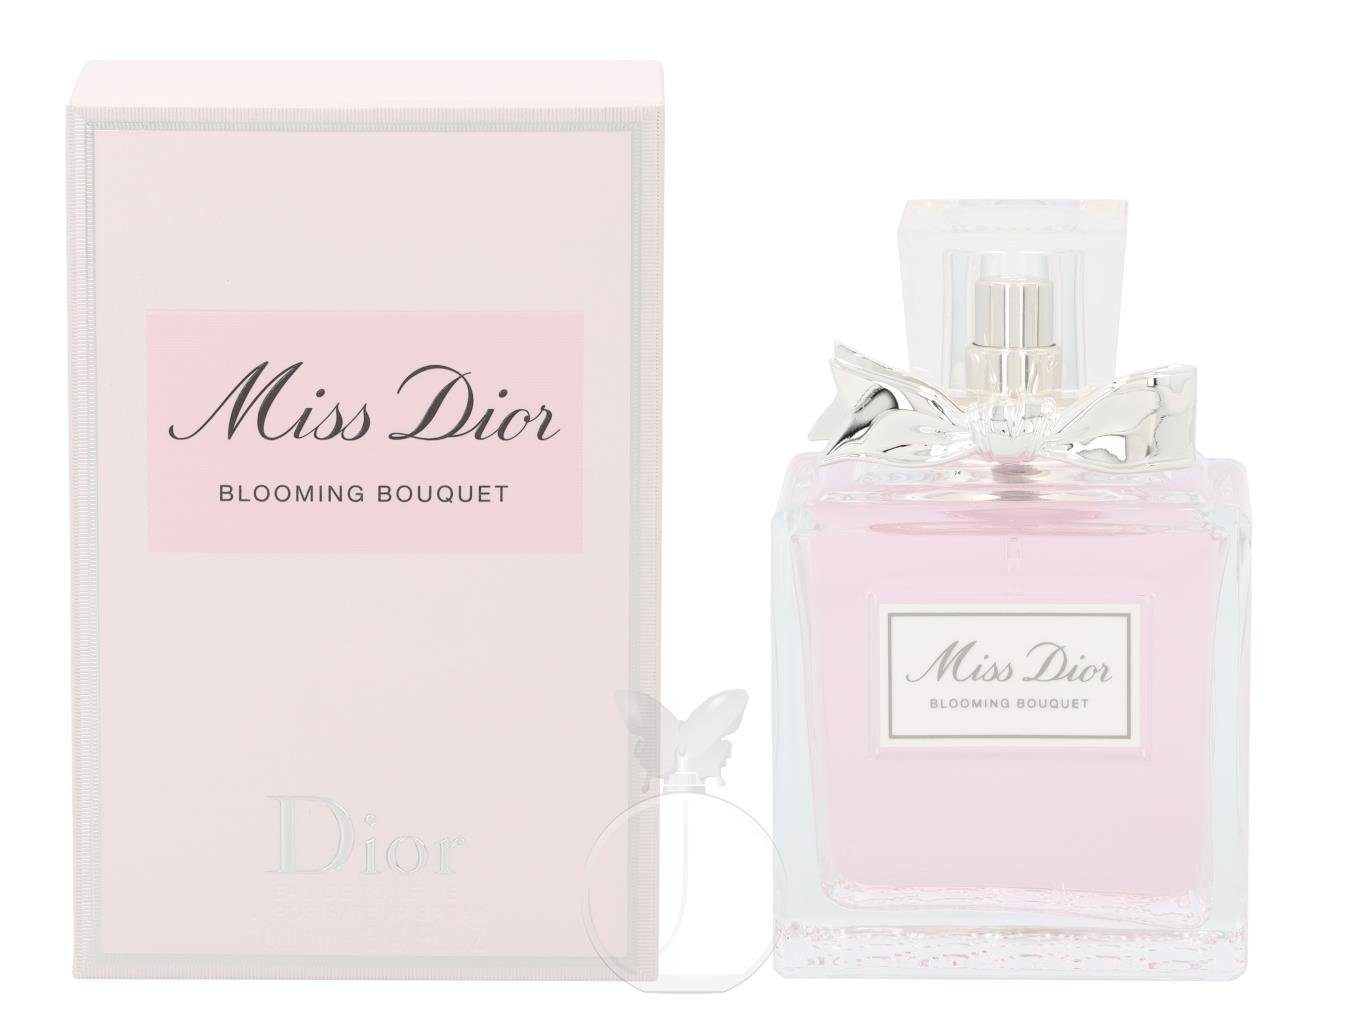 Toilette Bouquet de Eau Blooming Toilette de Dior Dior Miss Eau Dior